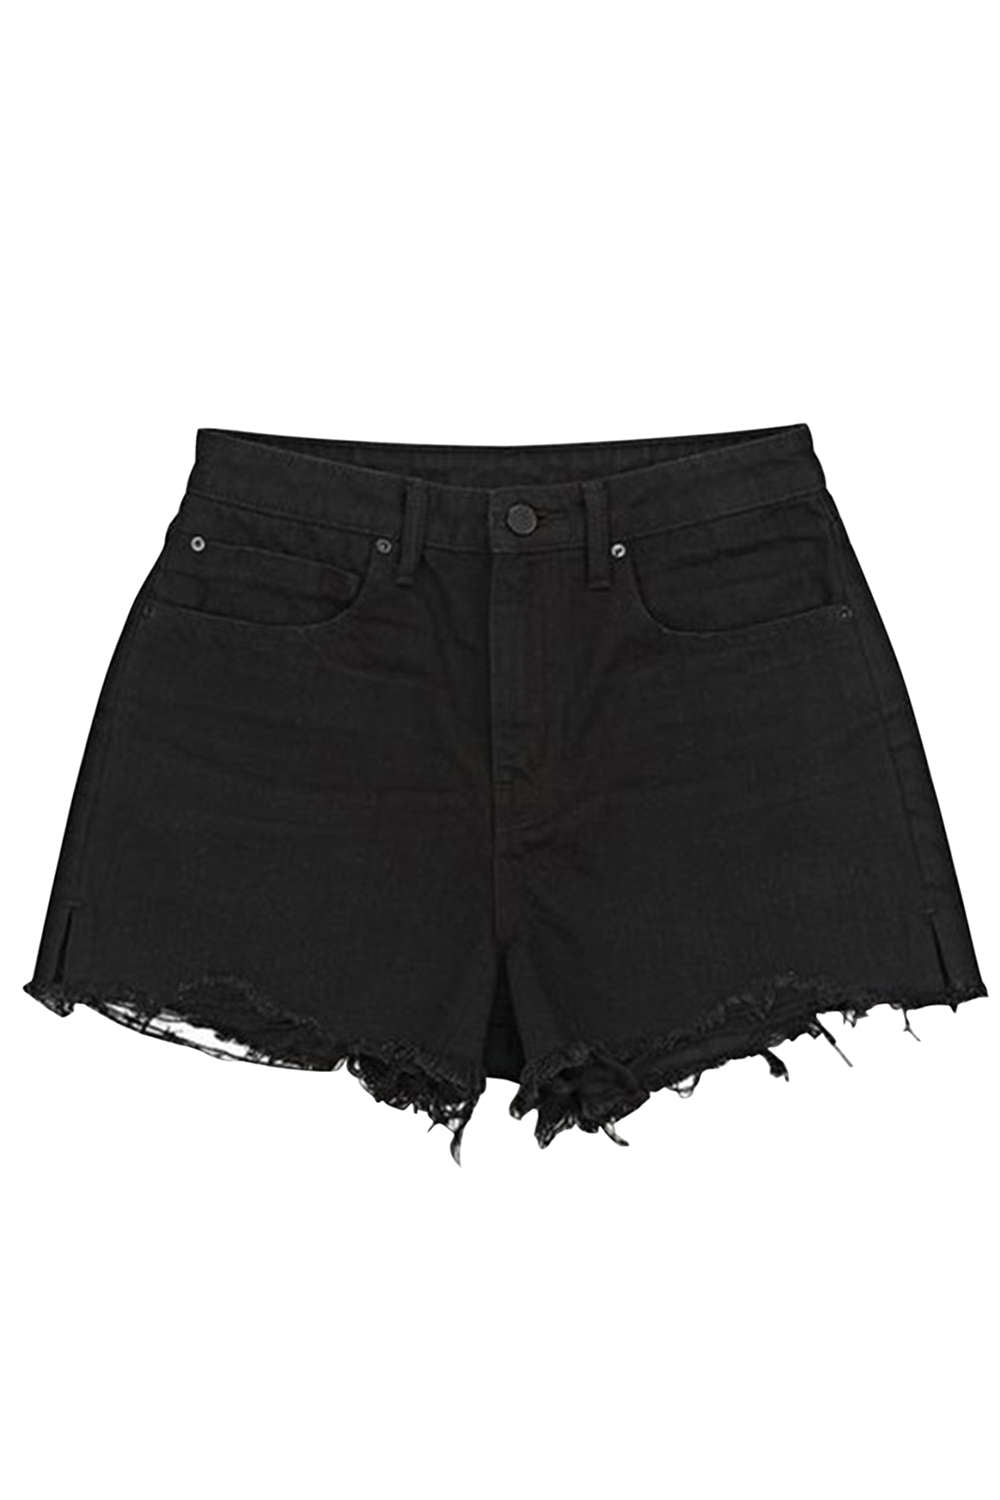 Iyasson Women's Ripped Fringe Hem High Waist Plain Hot Denim Shorts